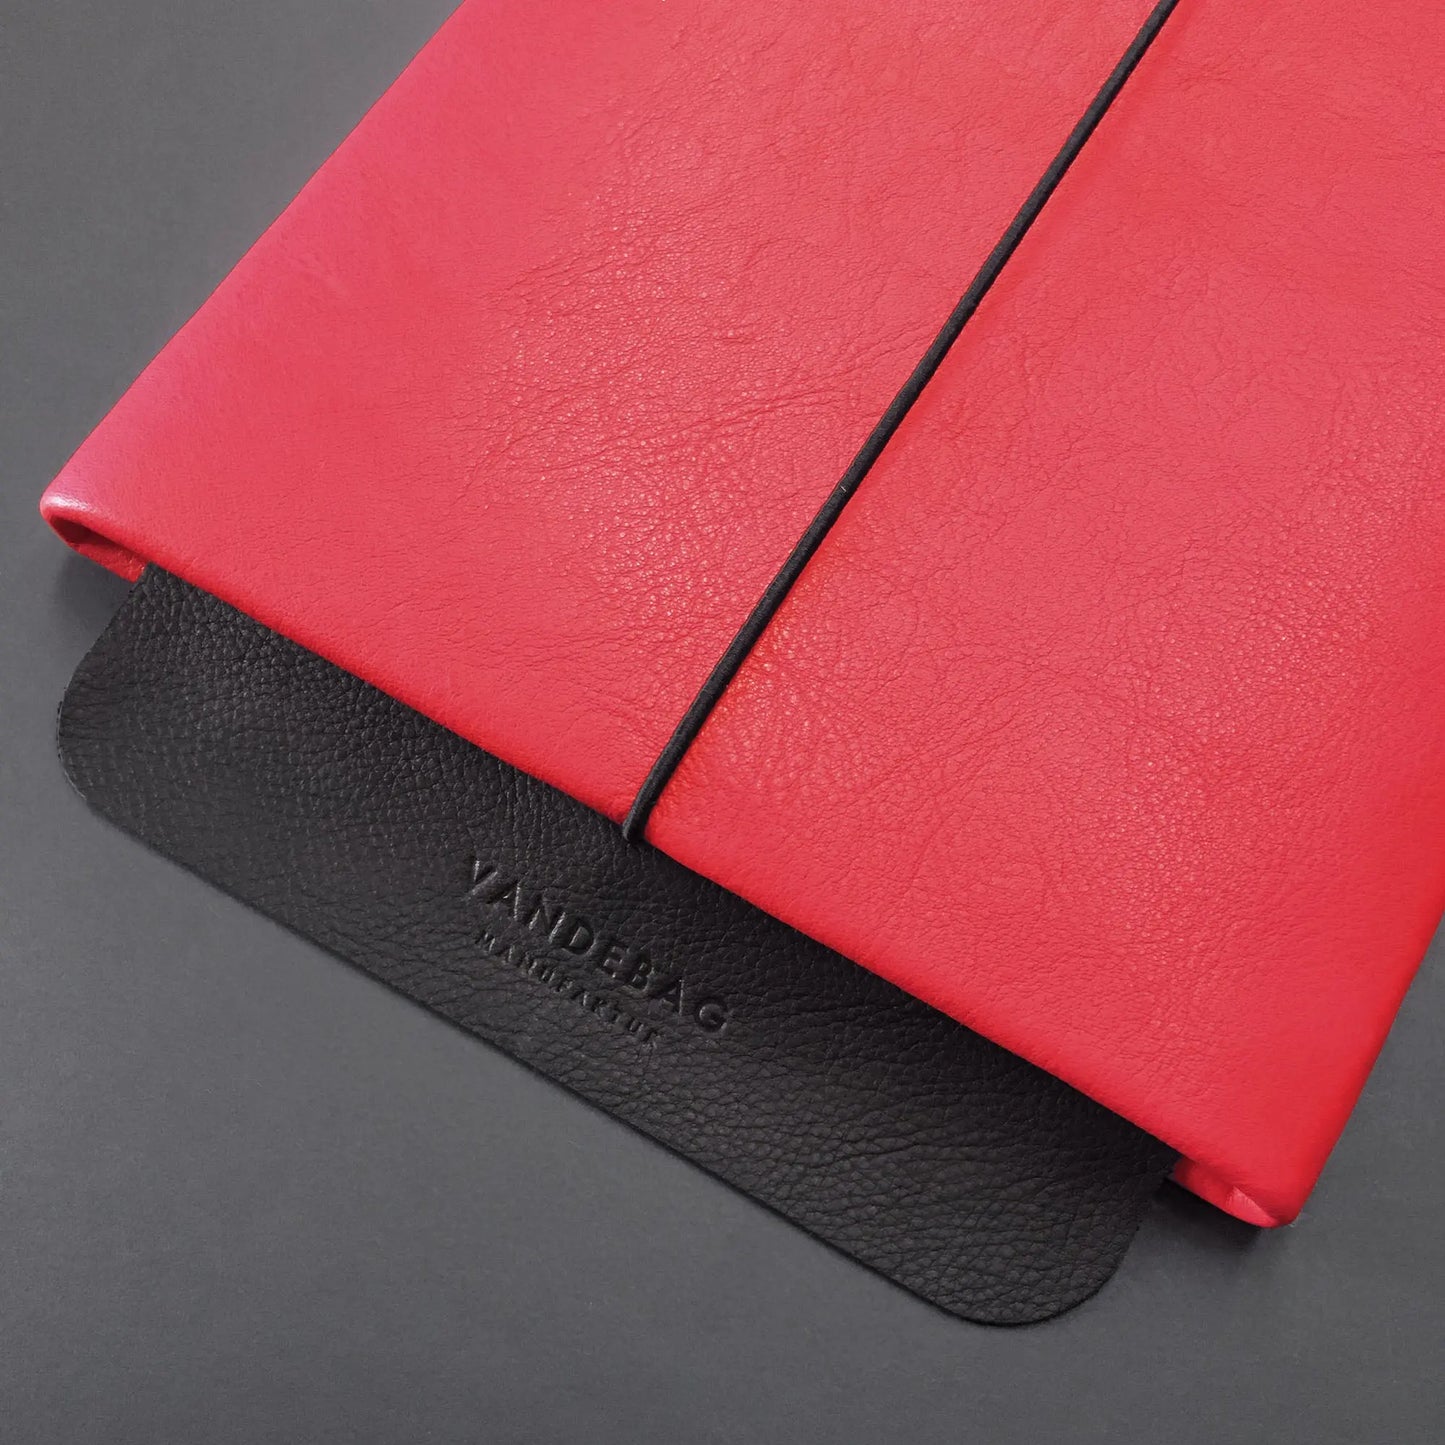 Lederhülle für ein iPad mit scharzer Lederklappe auf der Vandebag Manufaktur eingeprägt ist.